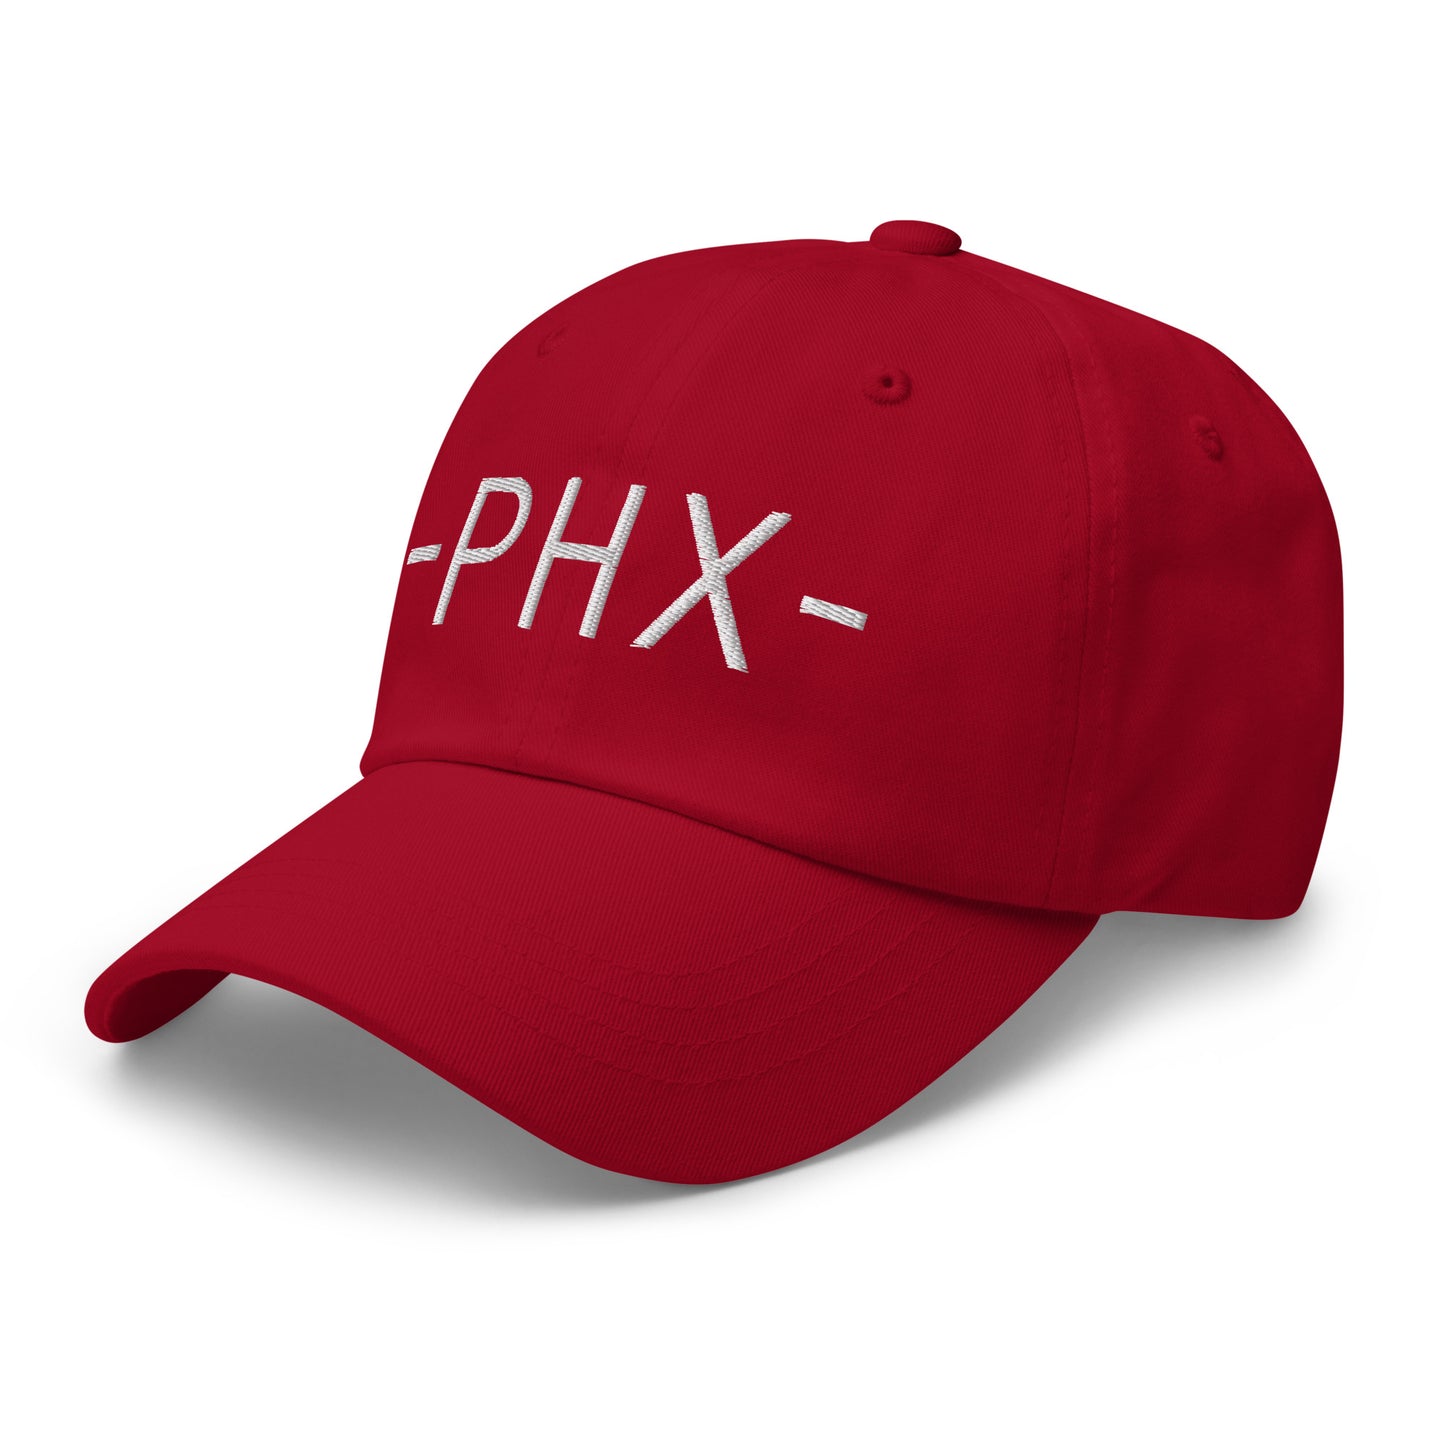 Souvenir Baseball Cap - White • PHX Phoenix • YHM Designs - Image 01